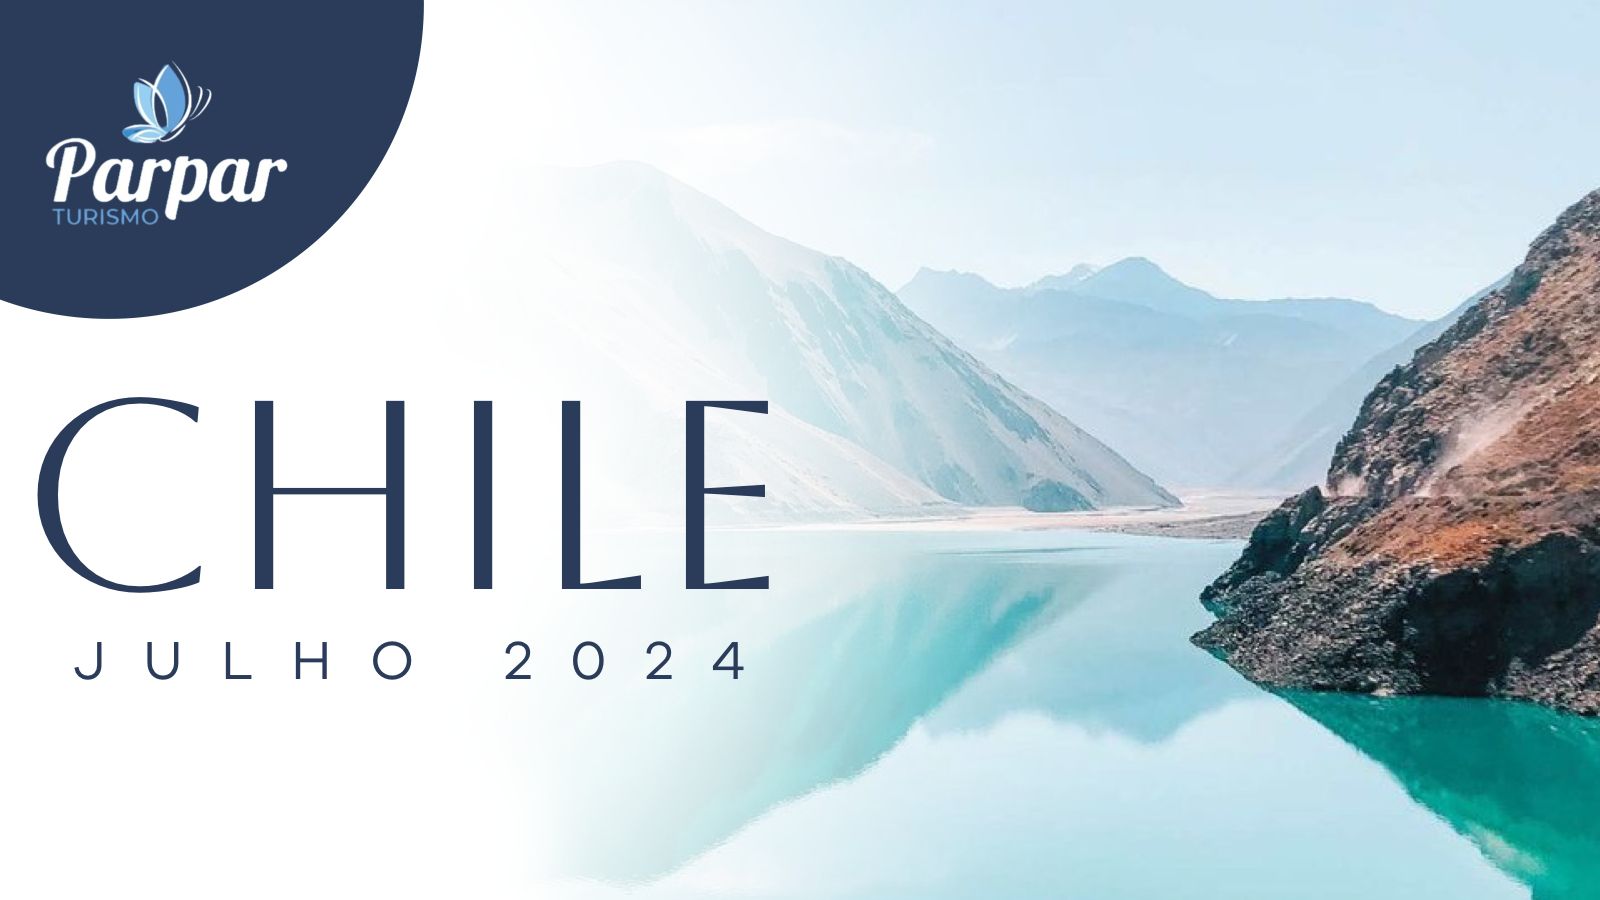 CHILE 2024 Parpar Turismo